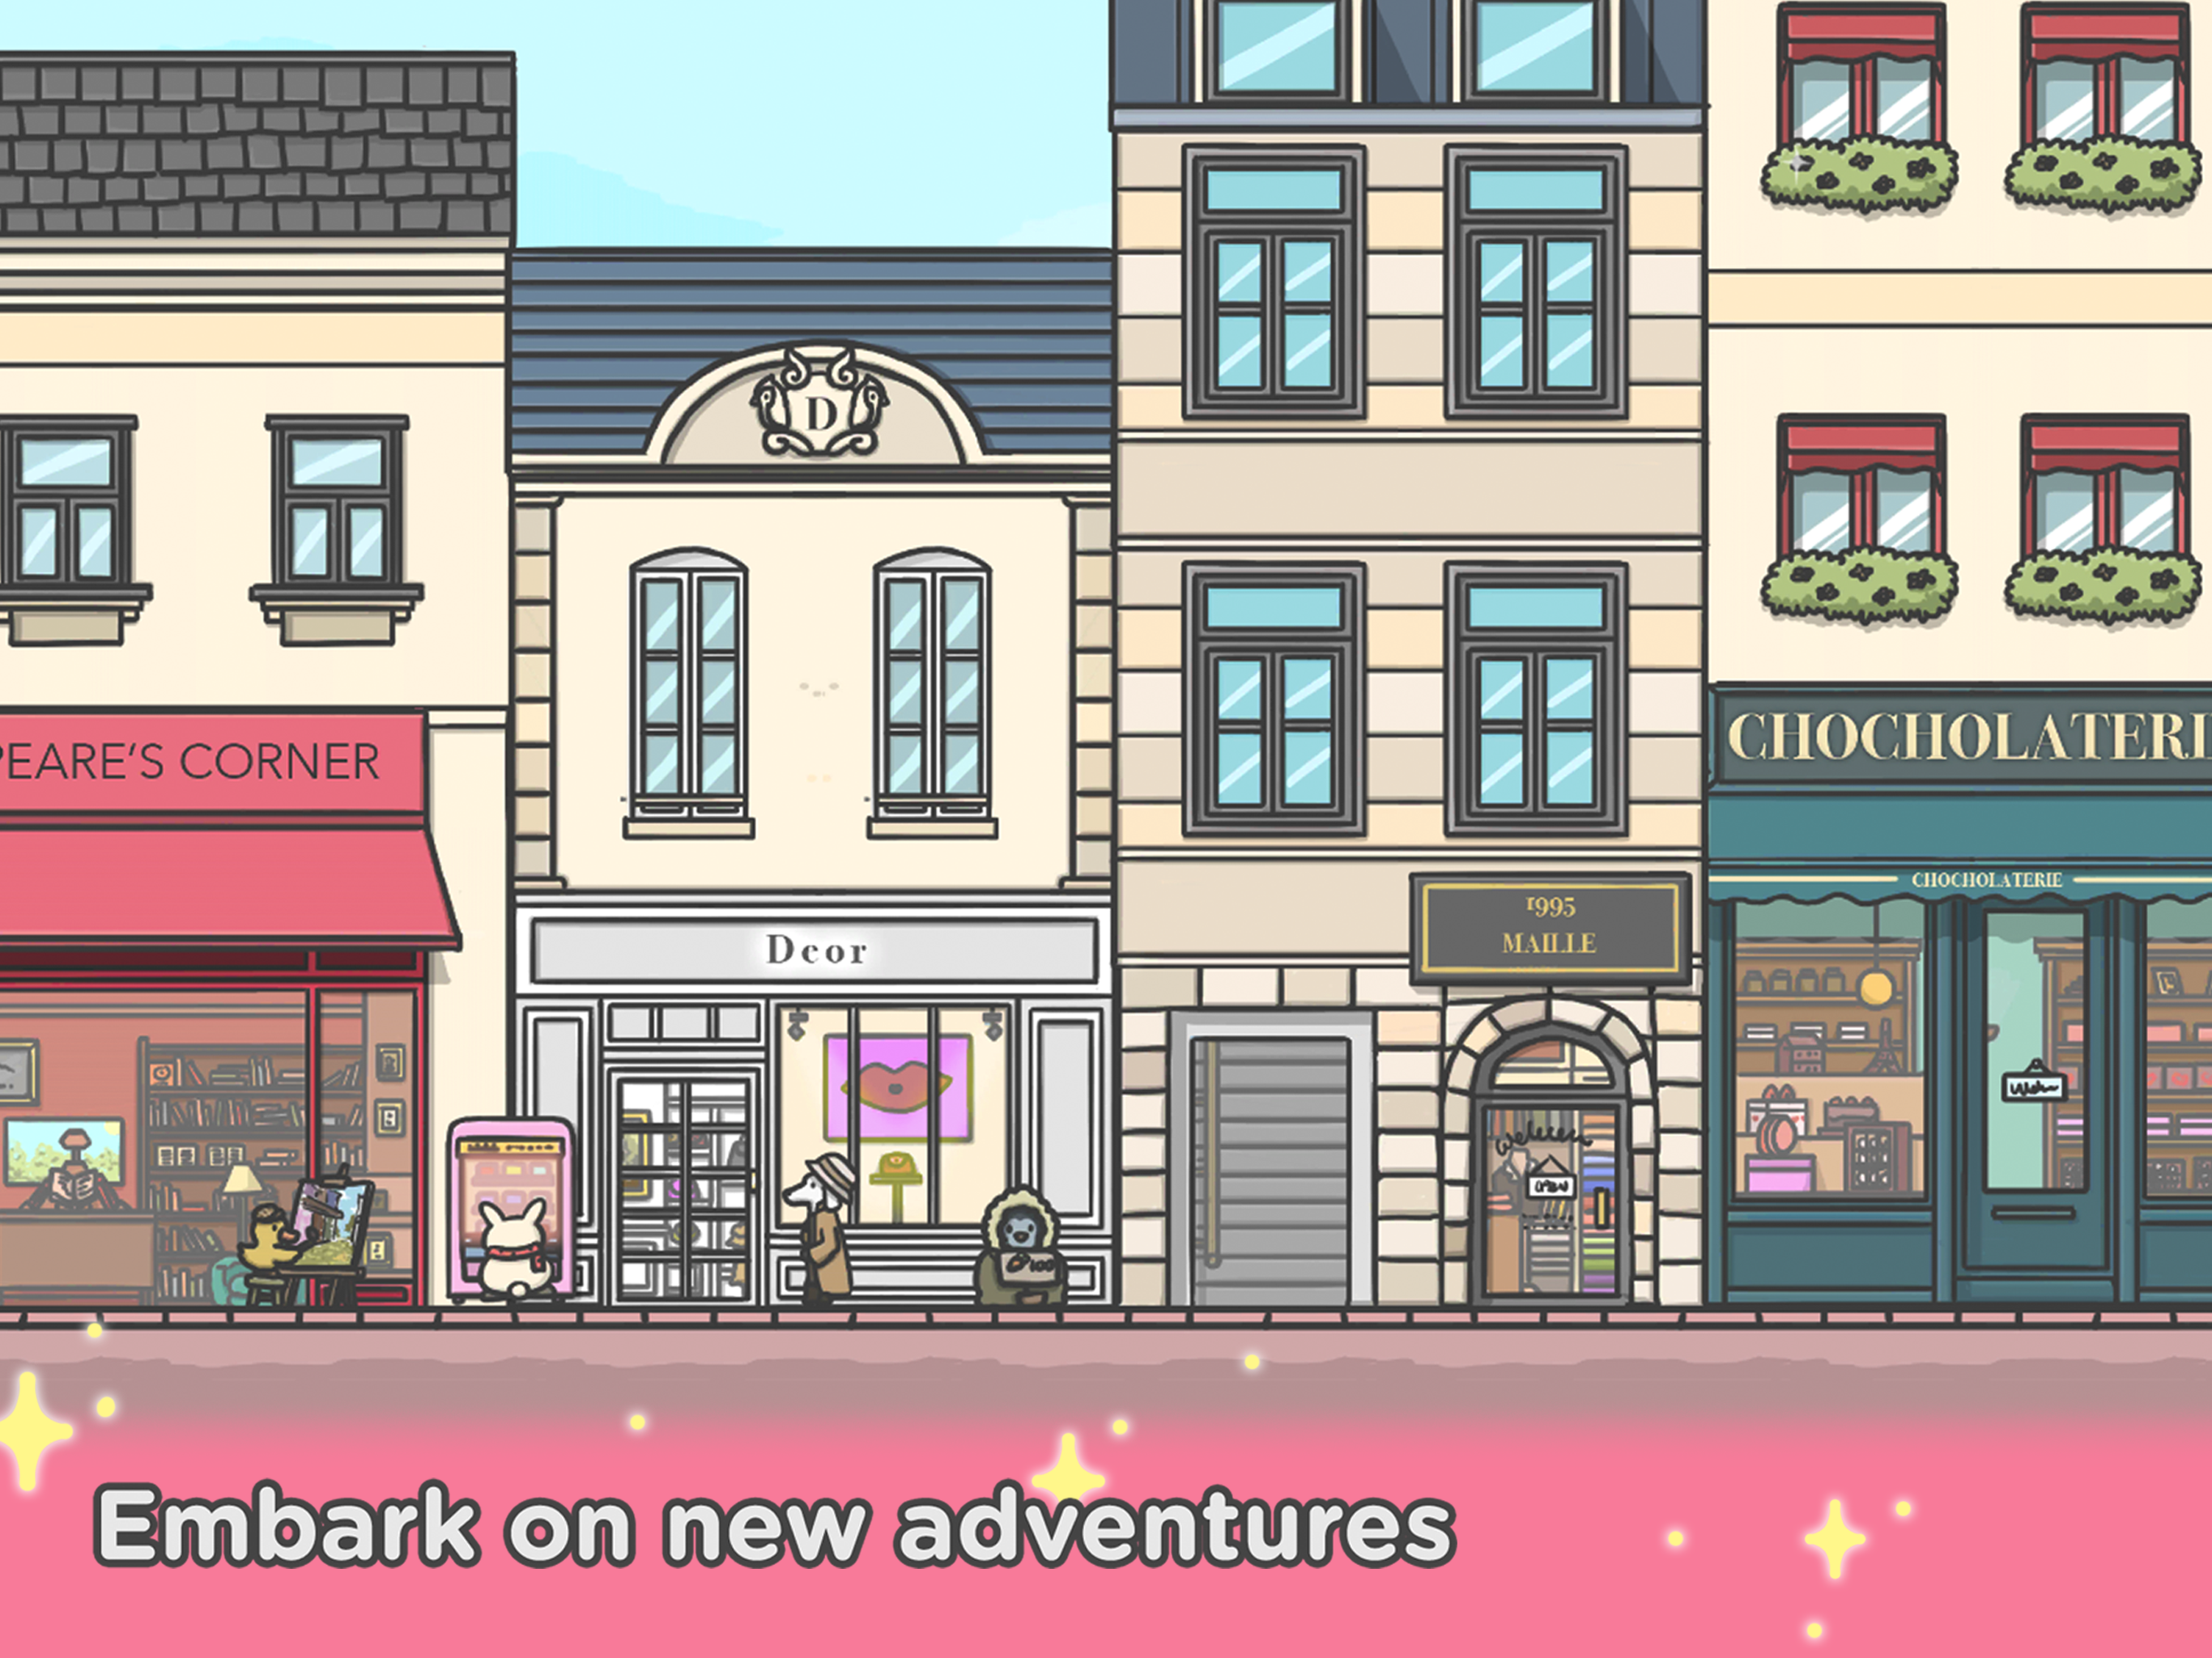 Screenshot of Tsuki Adventure 2